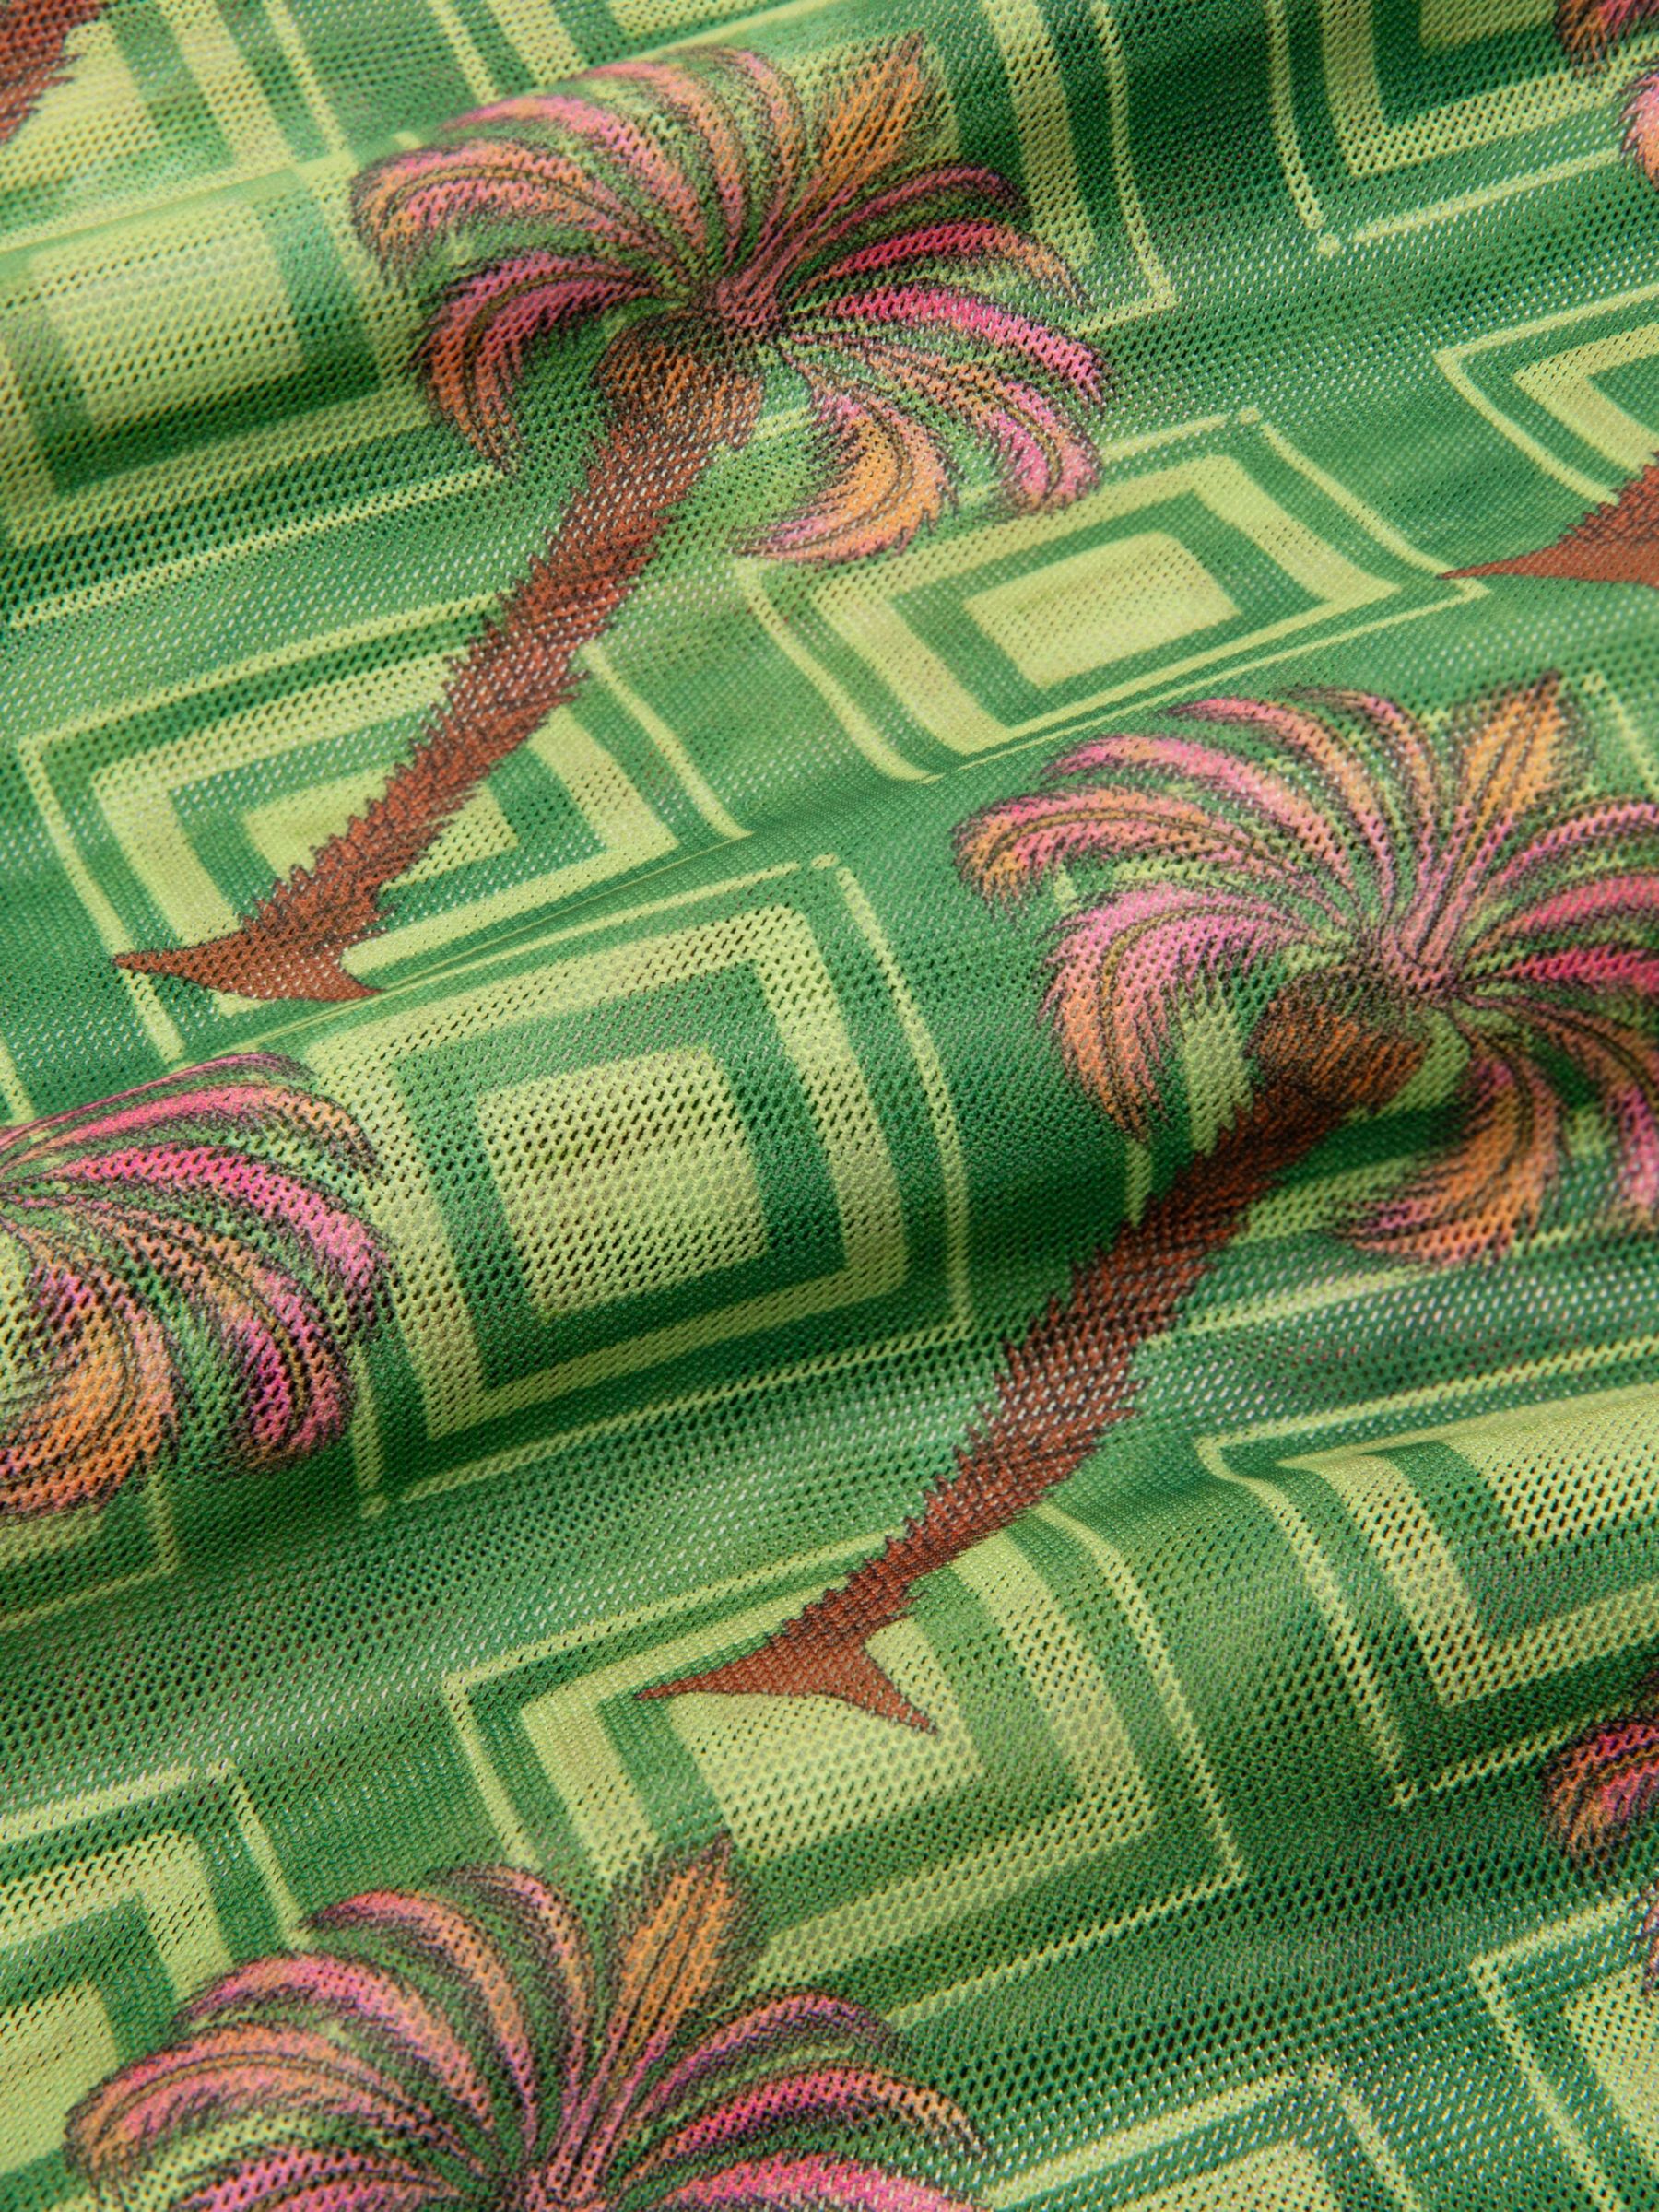 Chelsea Peers Mesh Geometric Palm Print Sarong, Khaki/Multi, L